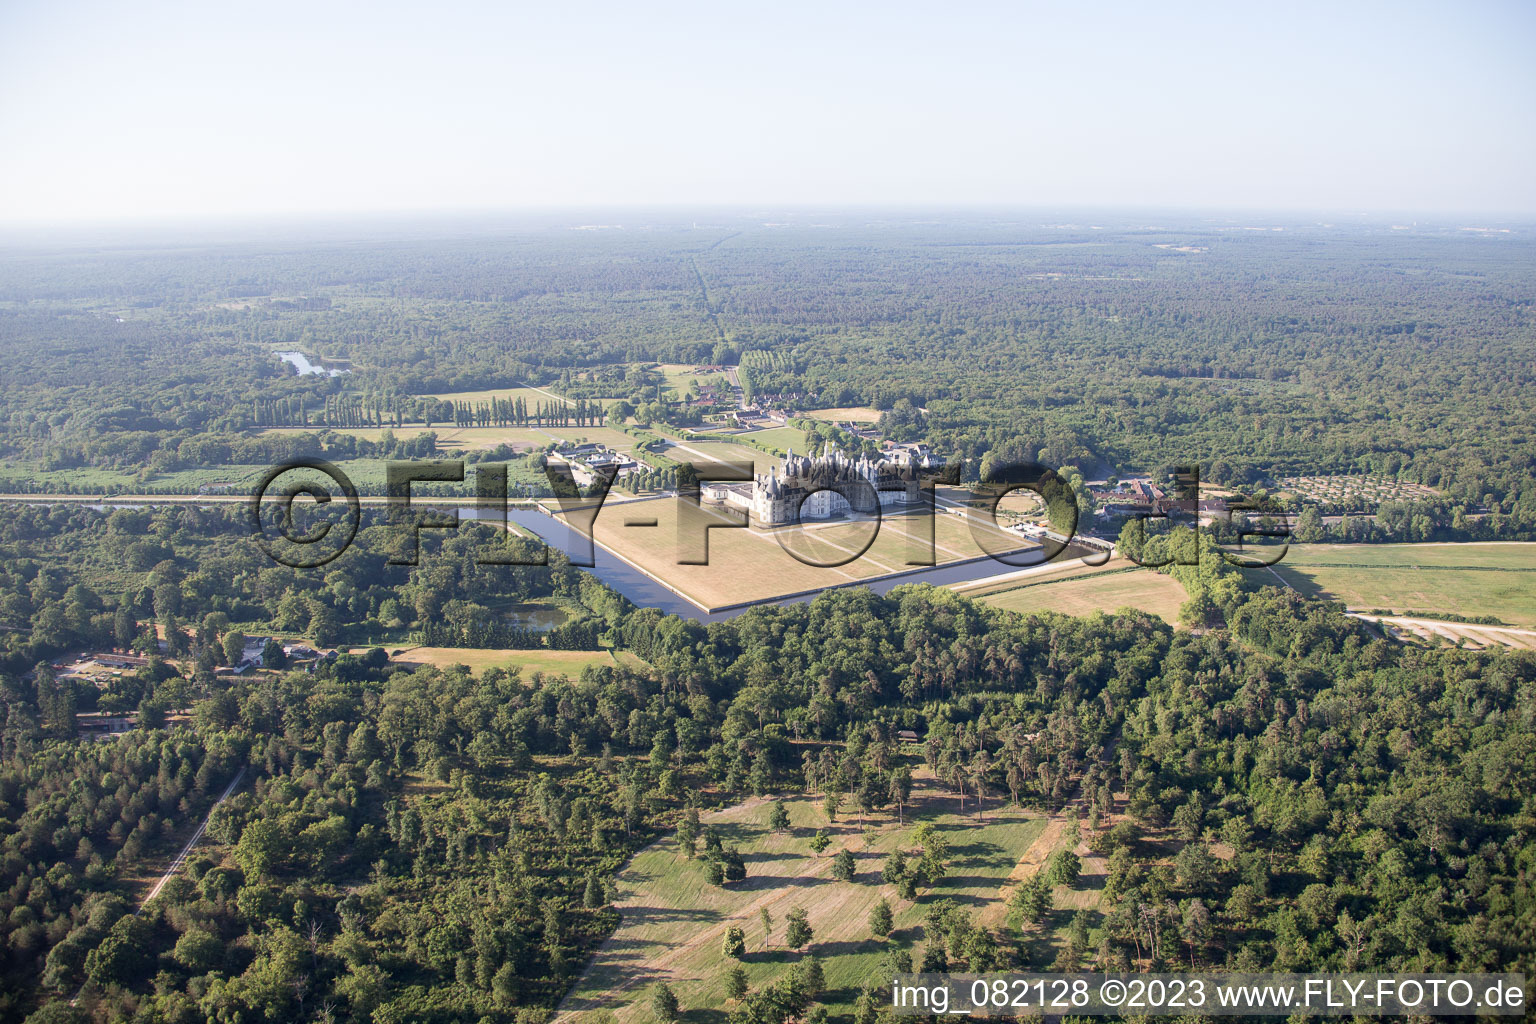 Chambord im Bundesland Loir-et-Cher, Frankreich aus der Luft betrachtet